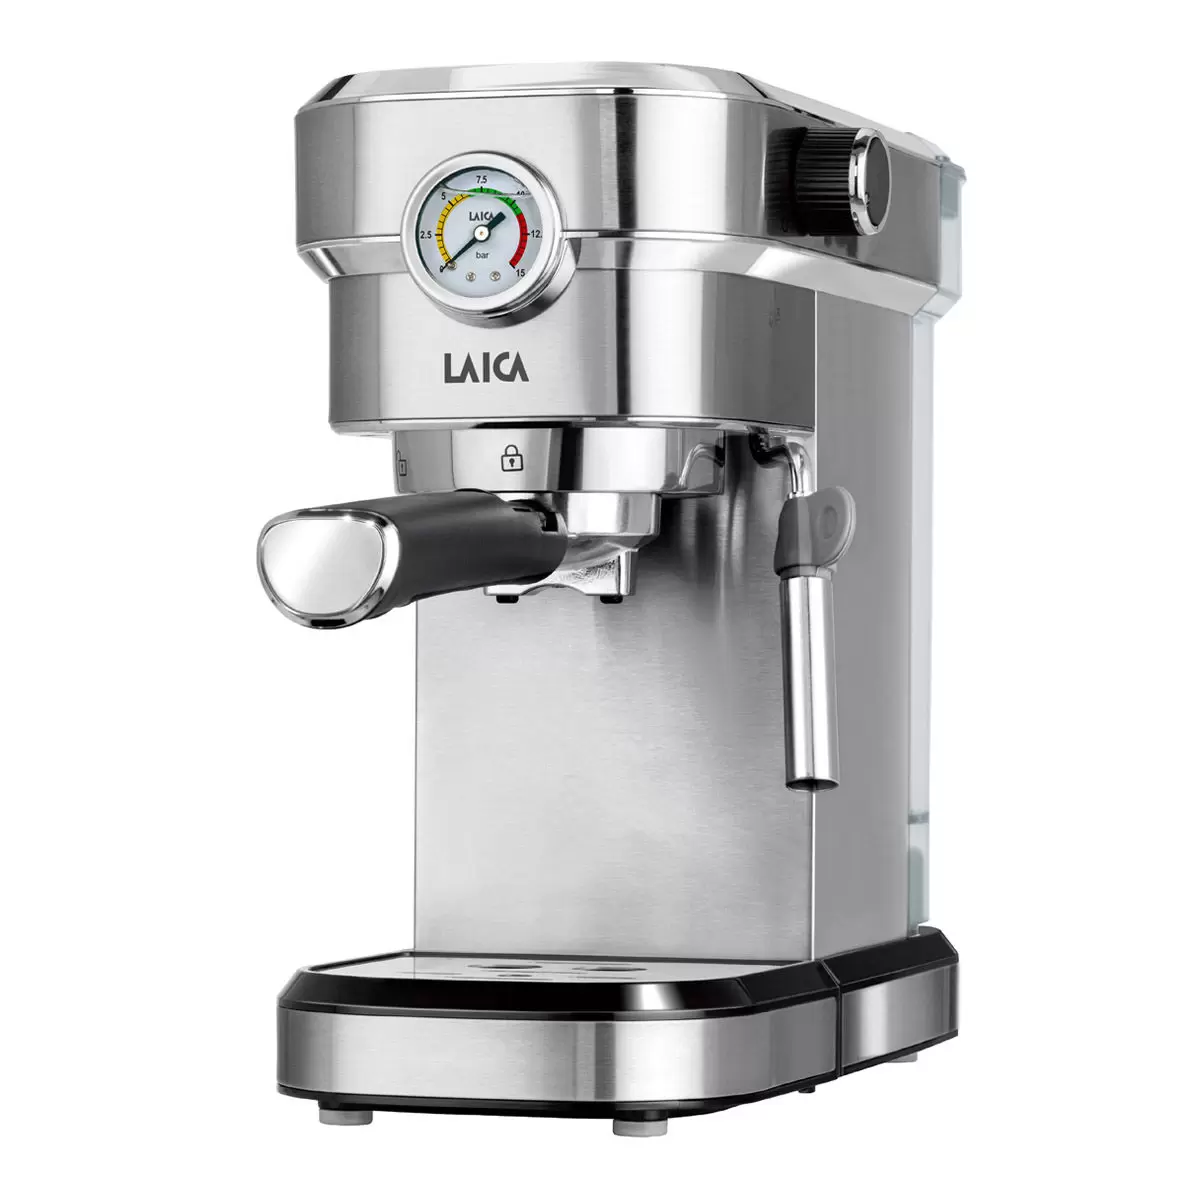 LAICA 義式濃縮咖啡機 HI8002